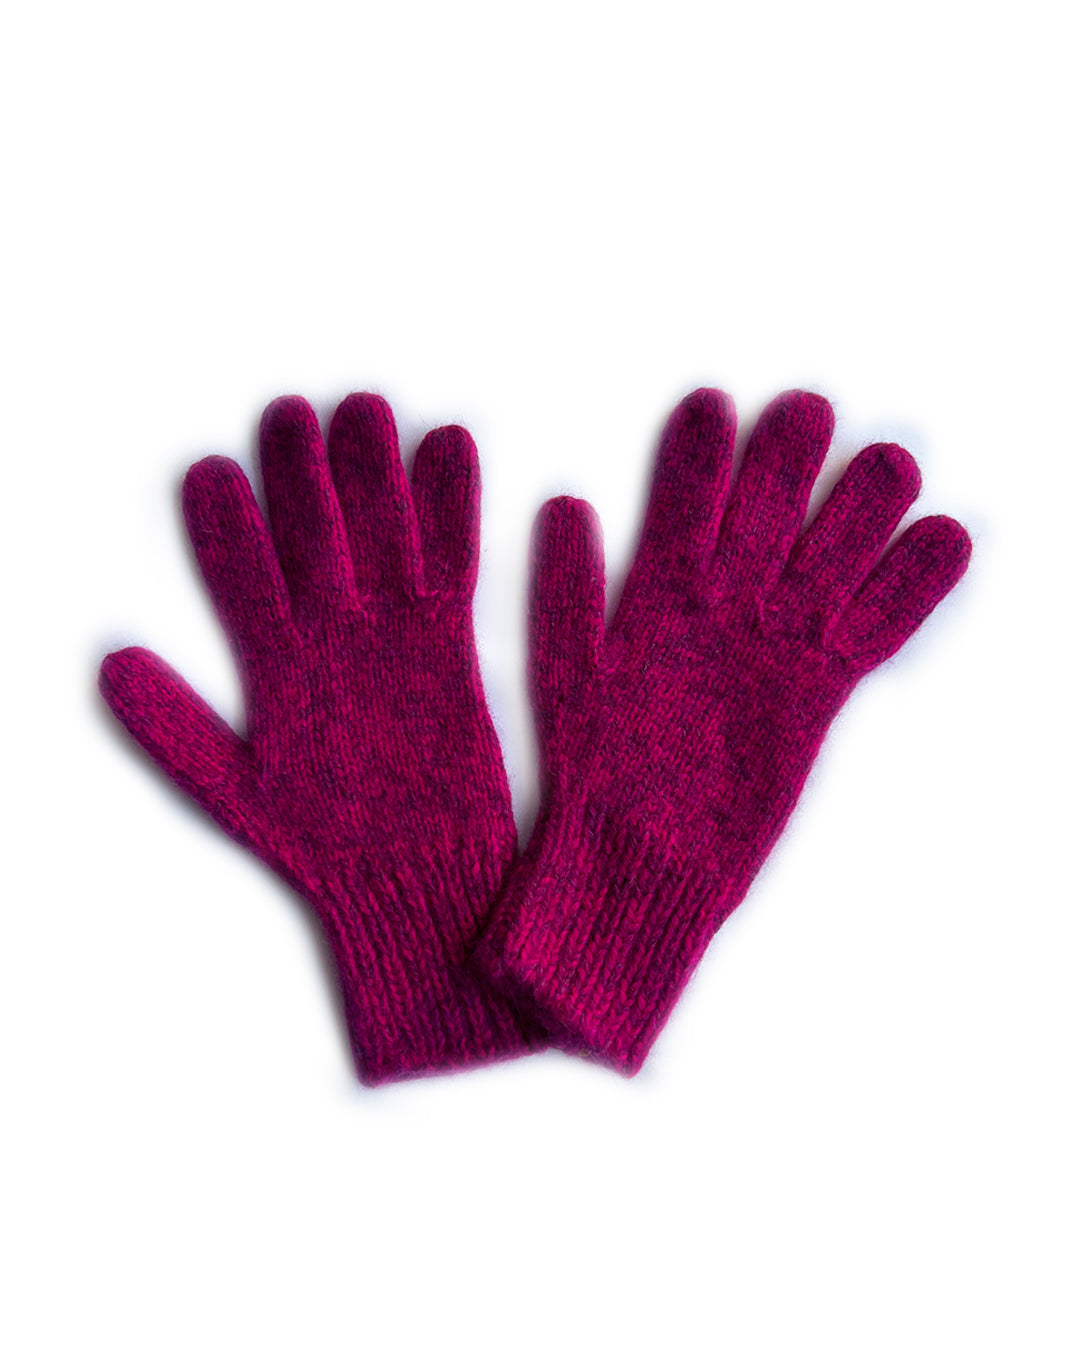 Magenta Maroon Blend Cashmere Gloves | cukimber designs